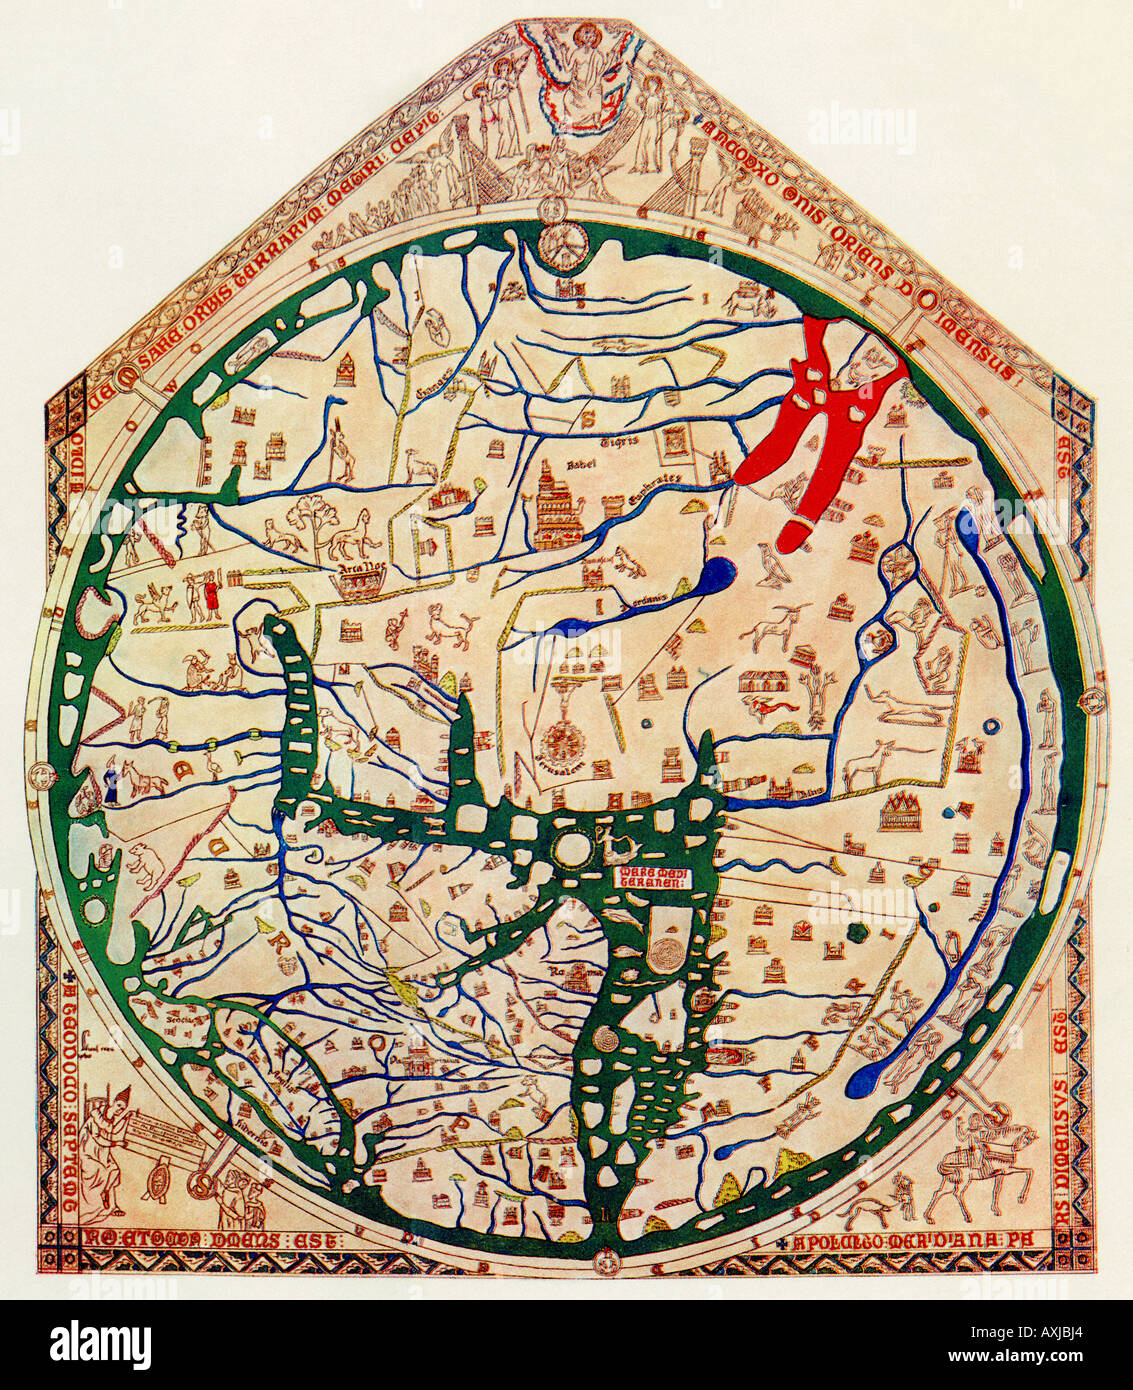 Hereford Mappa Mundi de 1280 montrant Jérusalem au Centre Est Europe Afrique inférieur gauche est inférieure droite. Demi-teinte couleur Banque D'Images